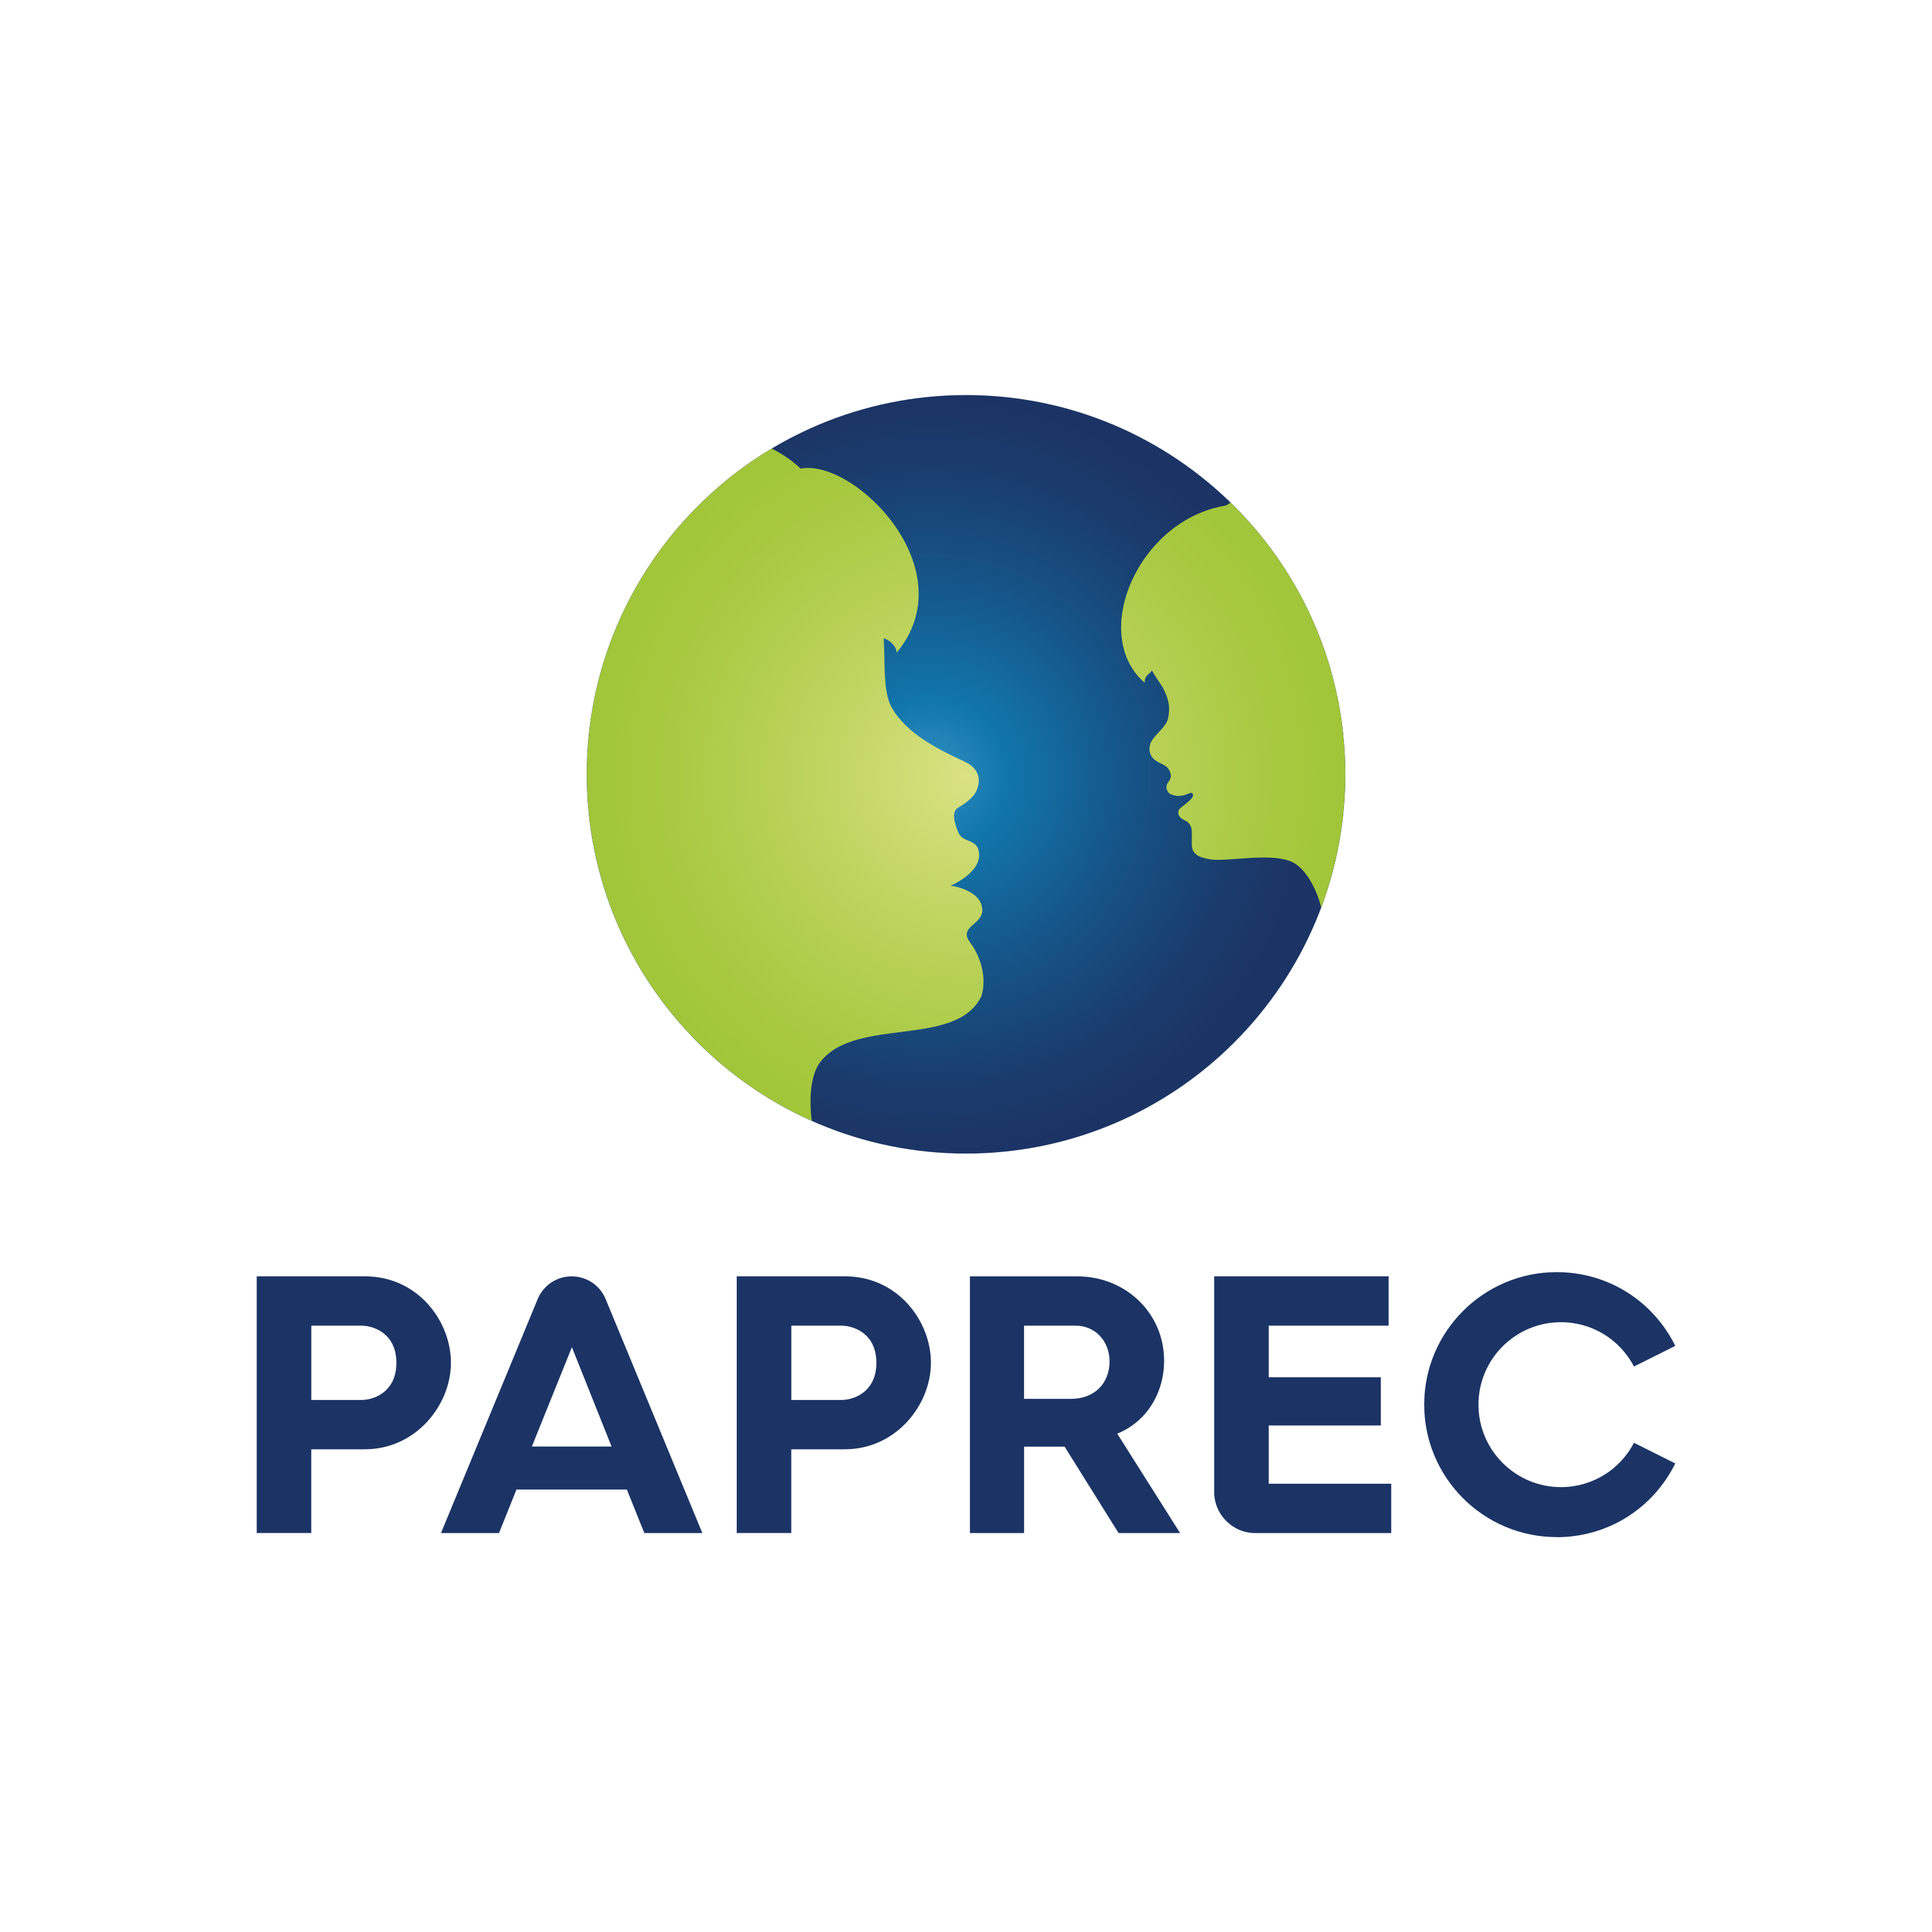 PAPREC Logo  Transparent Image